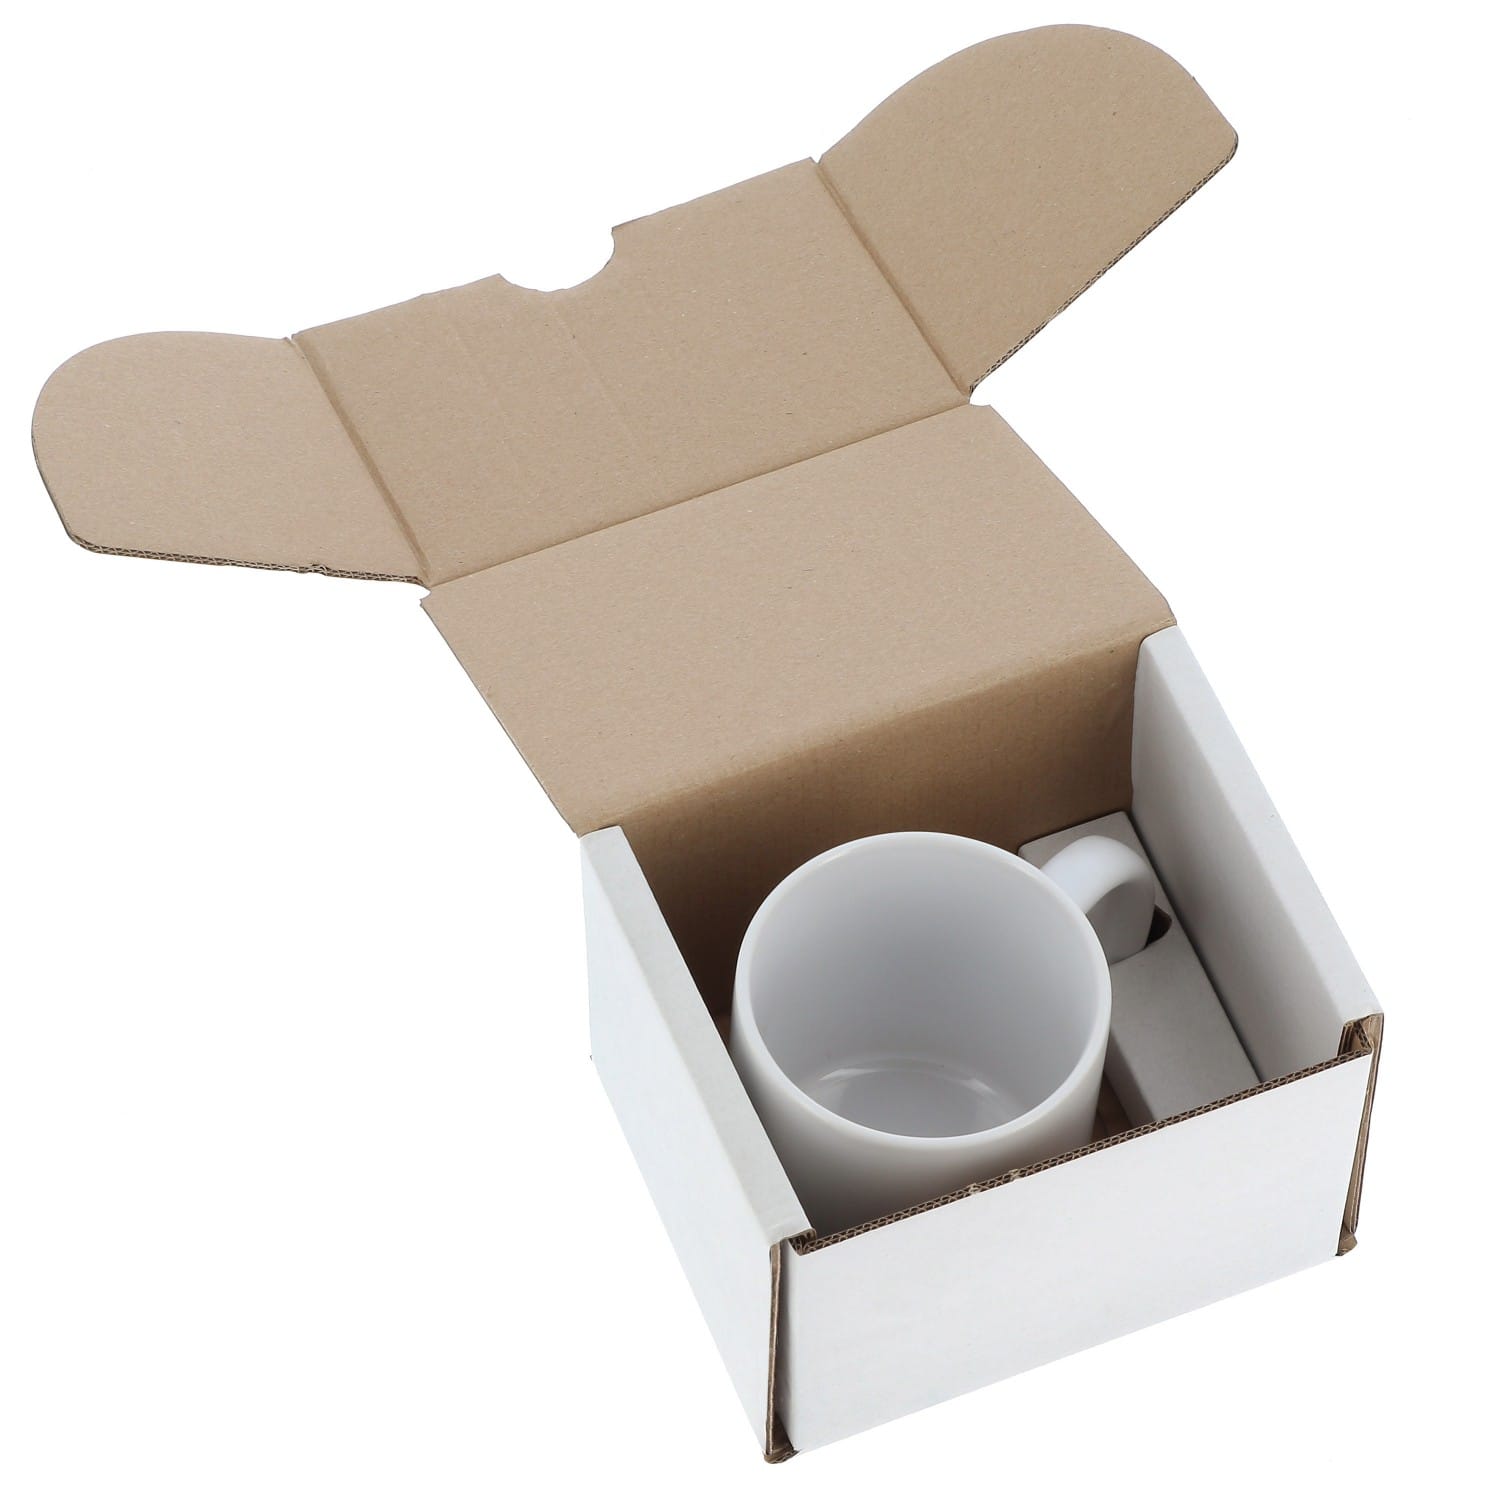 Emballage - Boîte blanche carton pour Mug 330ml (11oz), boule à neige,  boule de Noël, et pour livraison en magasin